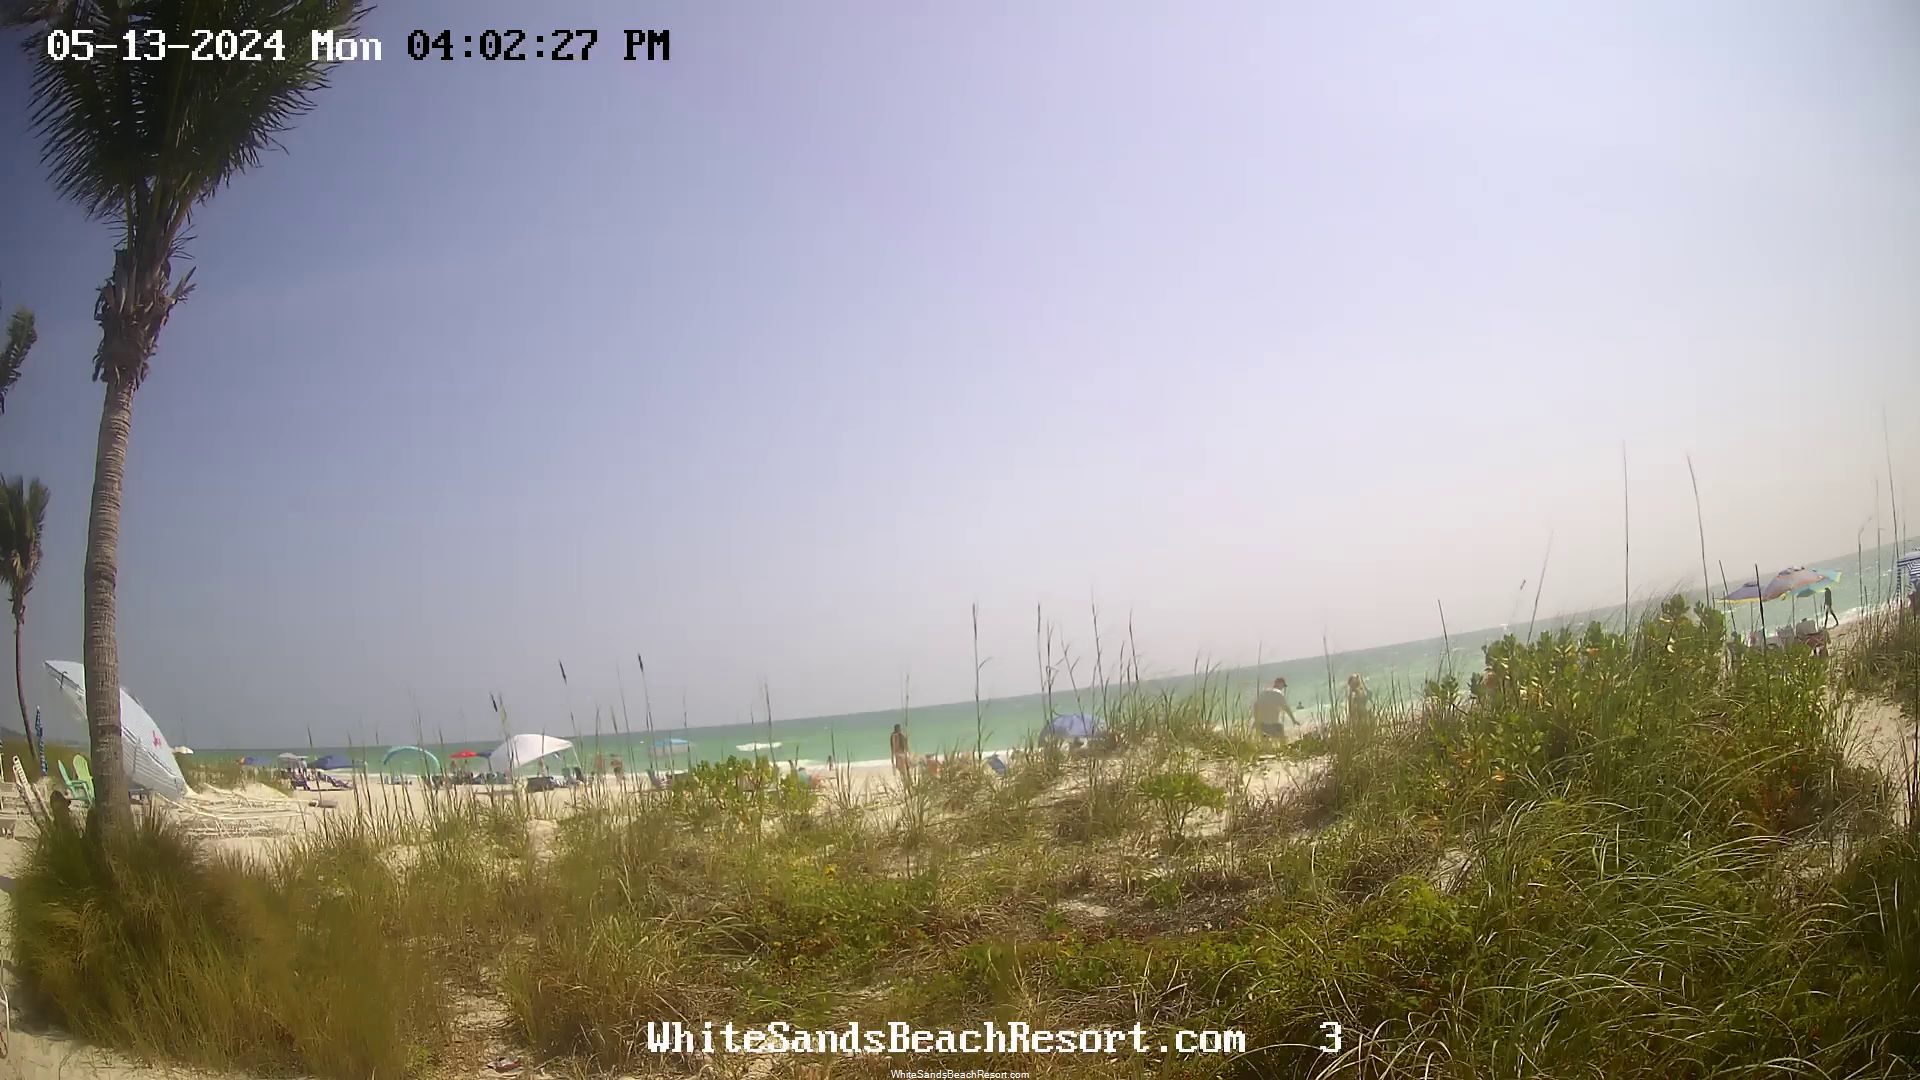 Holmes Beach, Florida Vie. 15:56